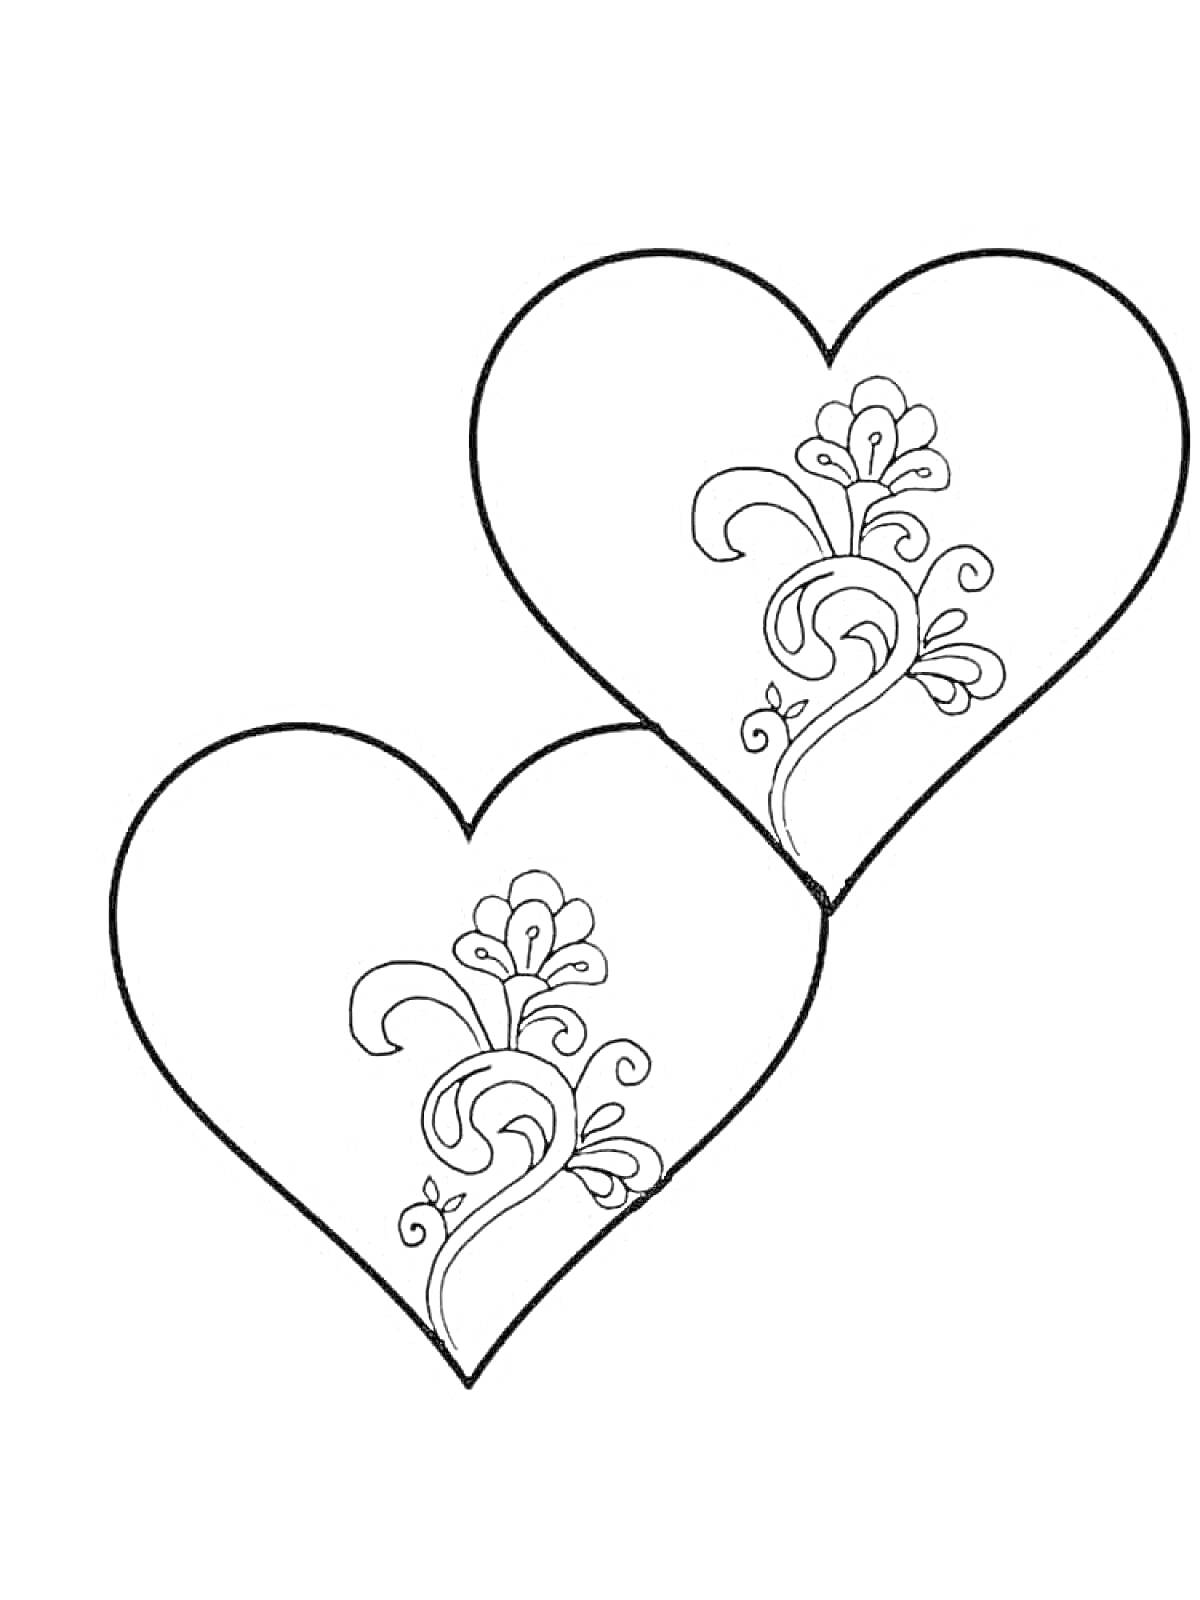 Раскраска Два пересекающихся сердца с узором из виньеток и цветов